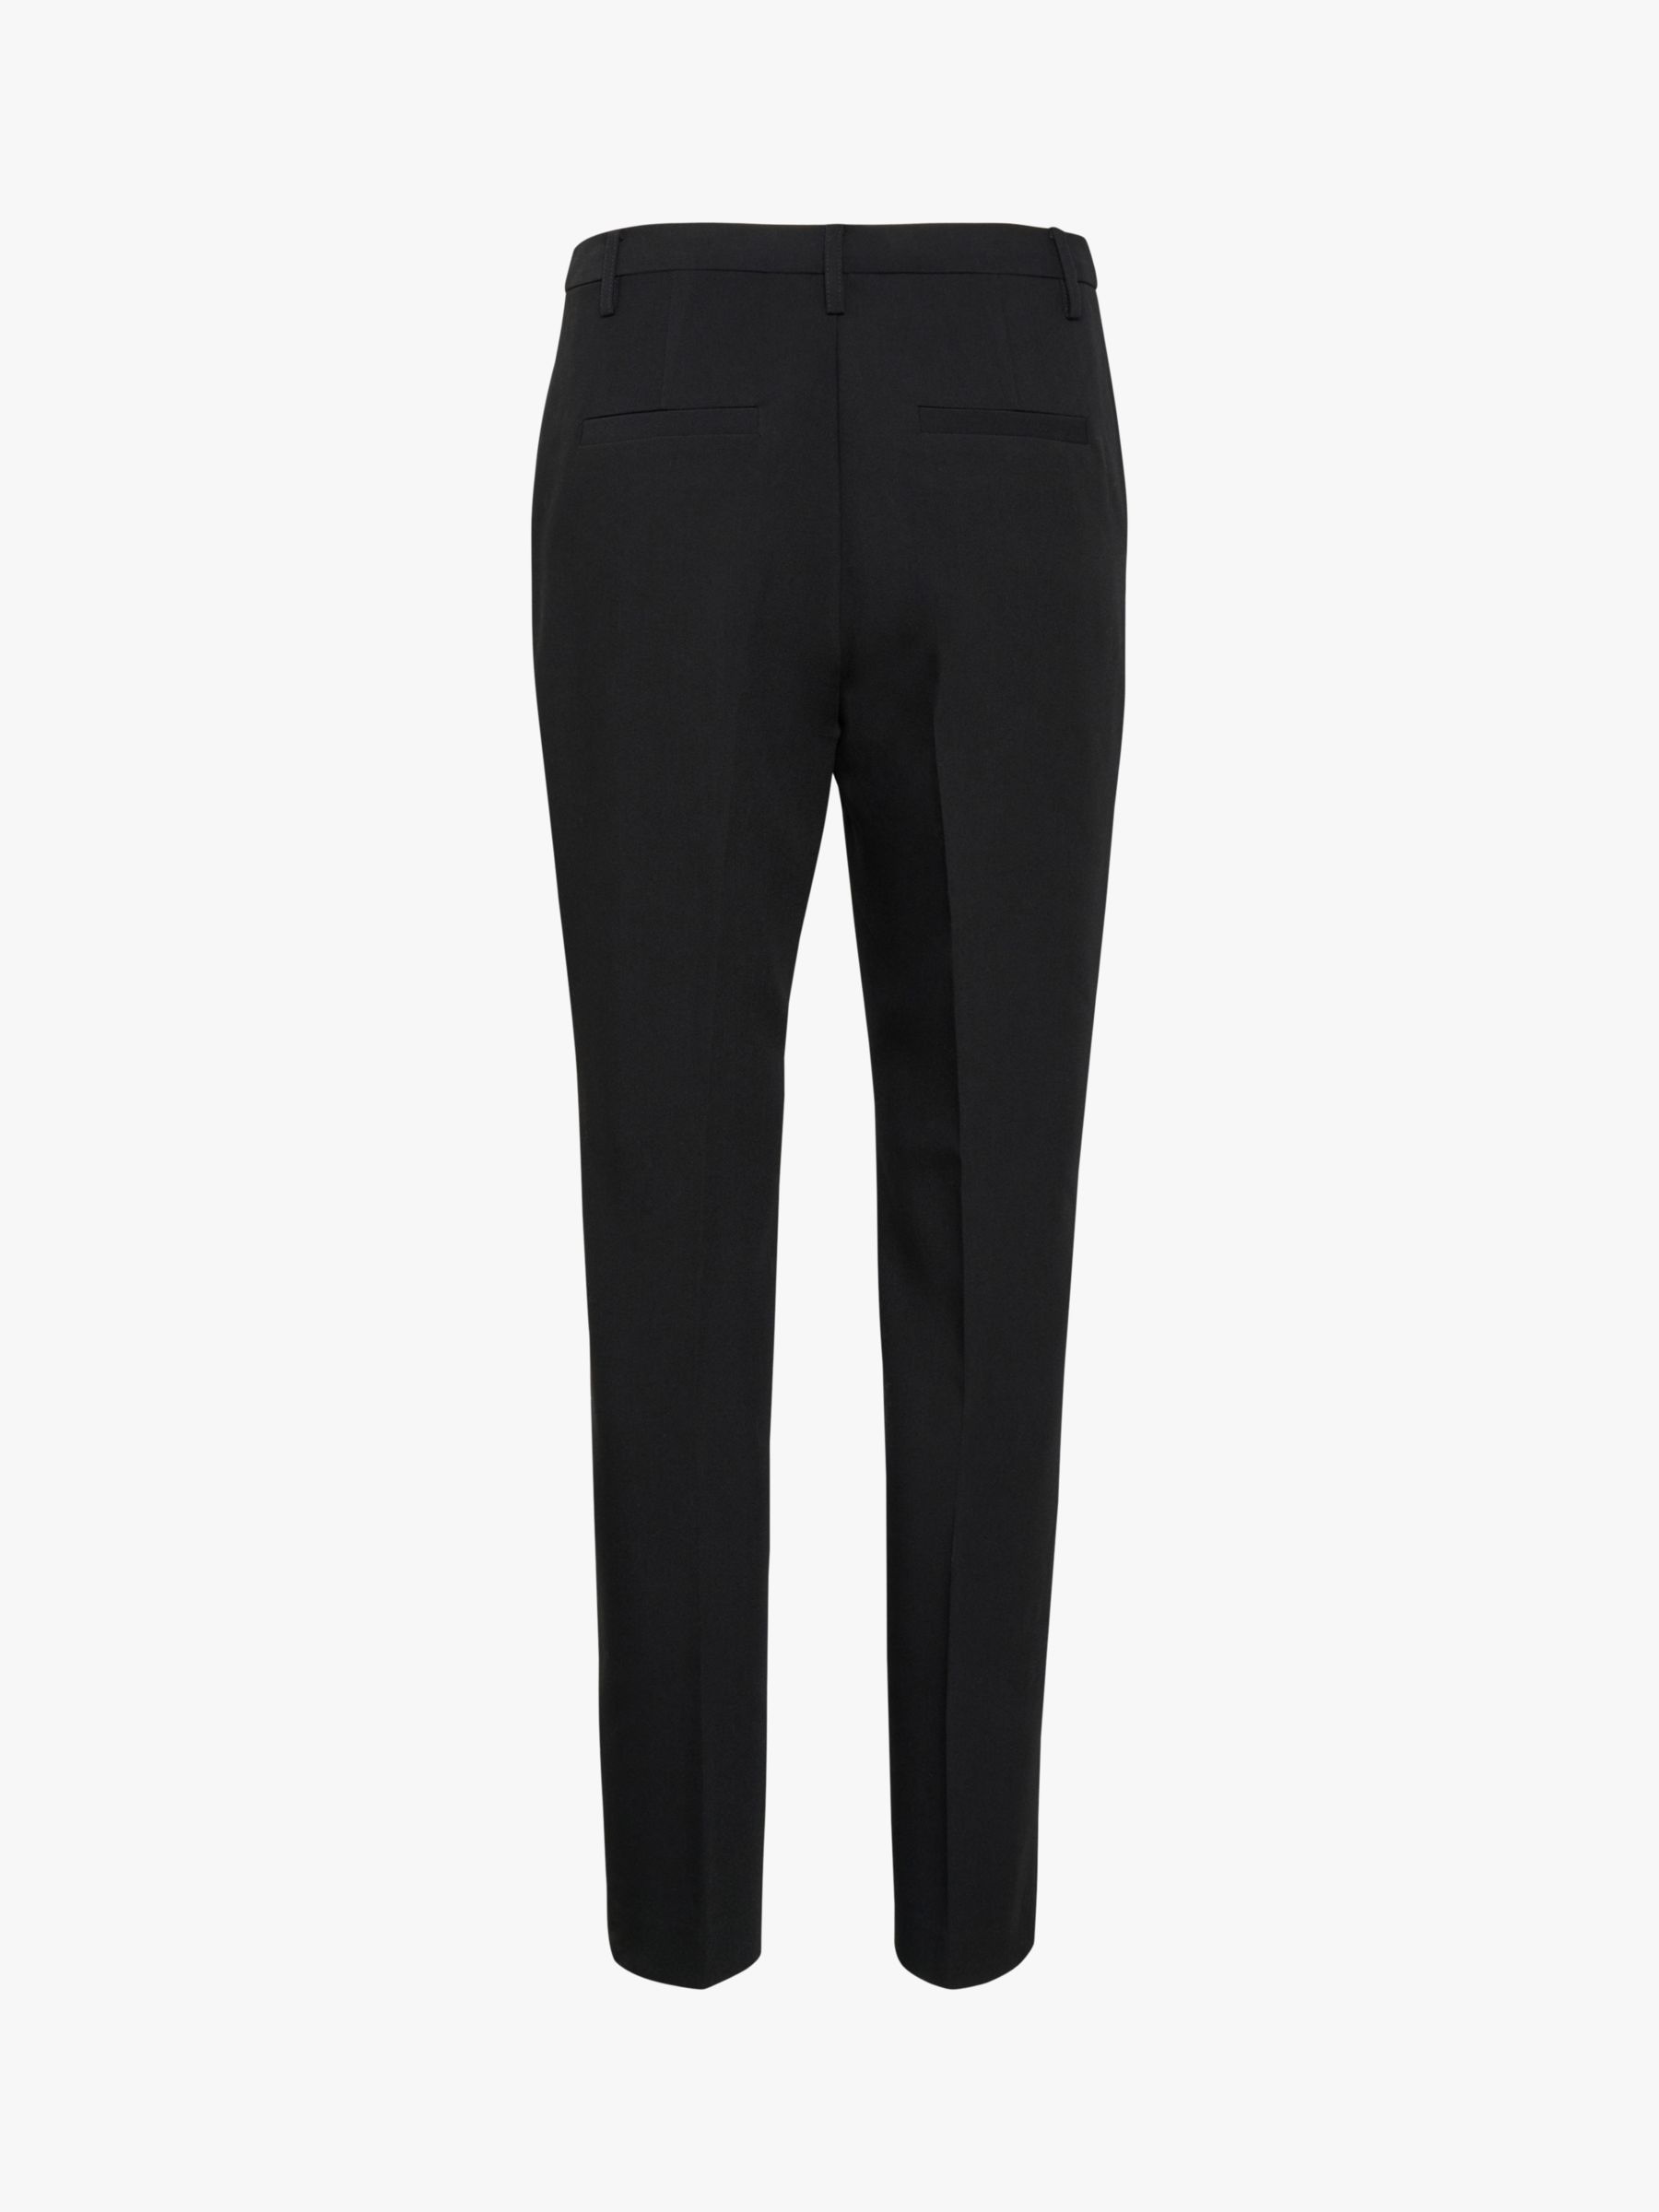 Buy Part Two Birdie Slim Fit Trousers, Black Online at johnlewis.com